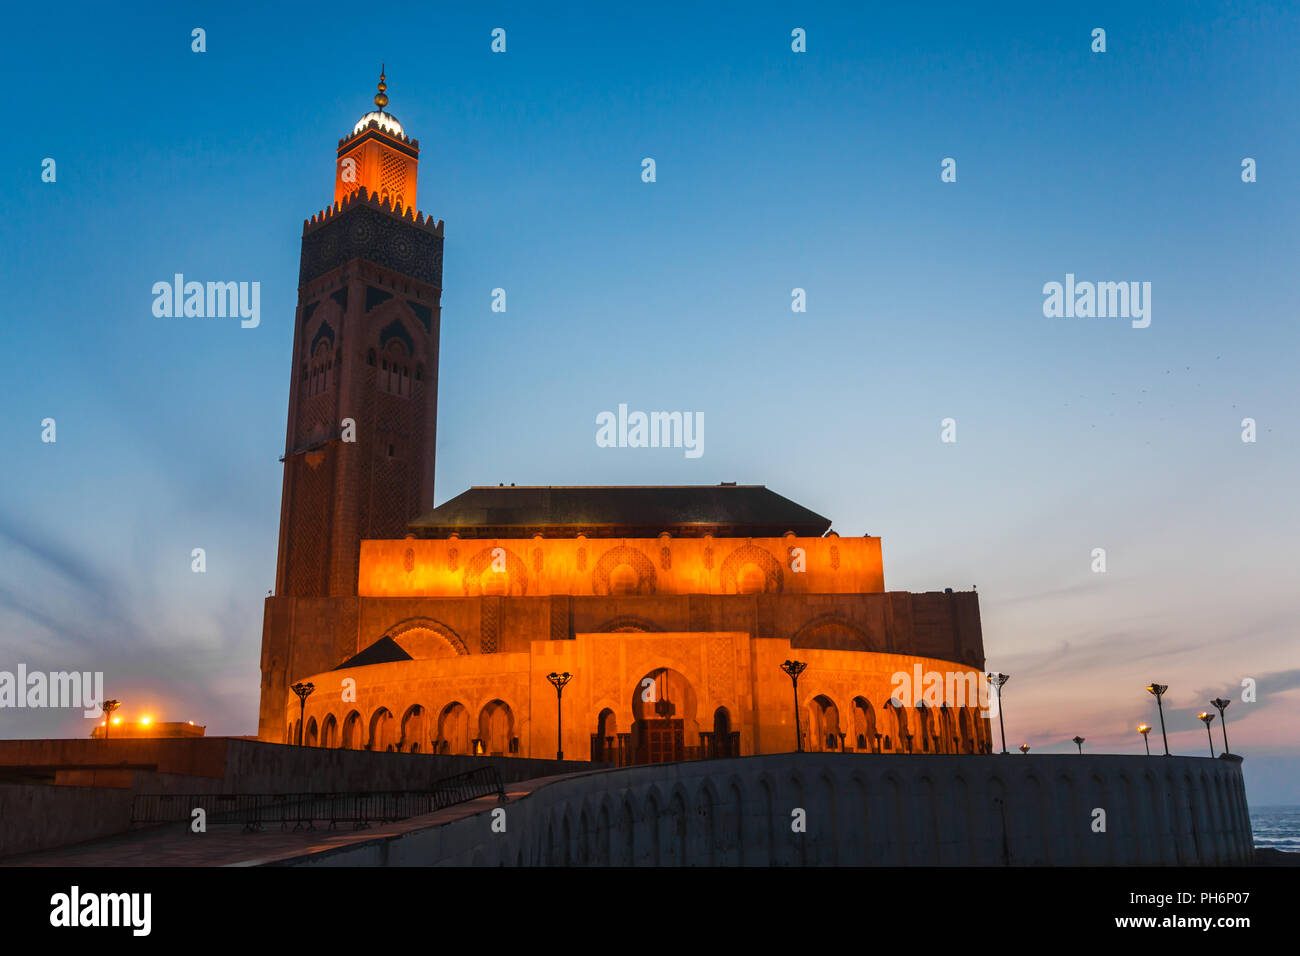 Hassan II mosque in casablanca Stock Photo